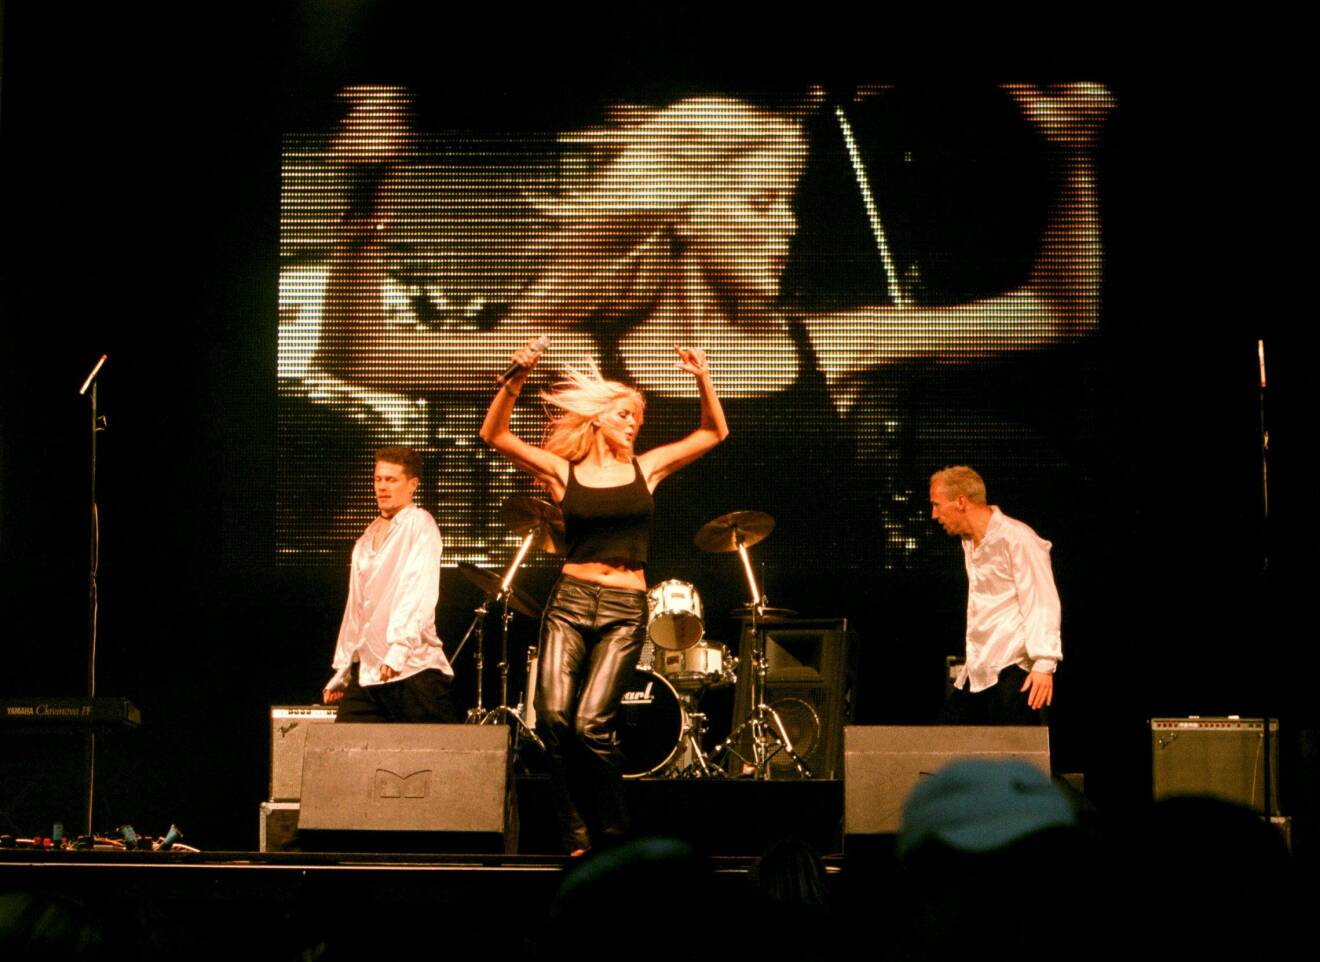 Victoria Silvstedt dansar på scen i skinnbyxor och linne.